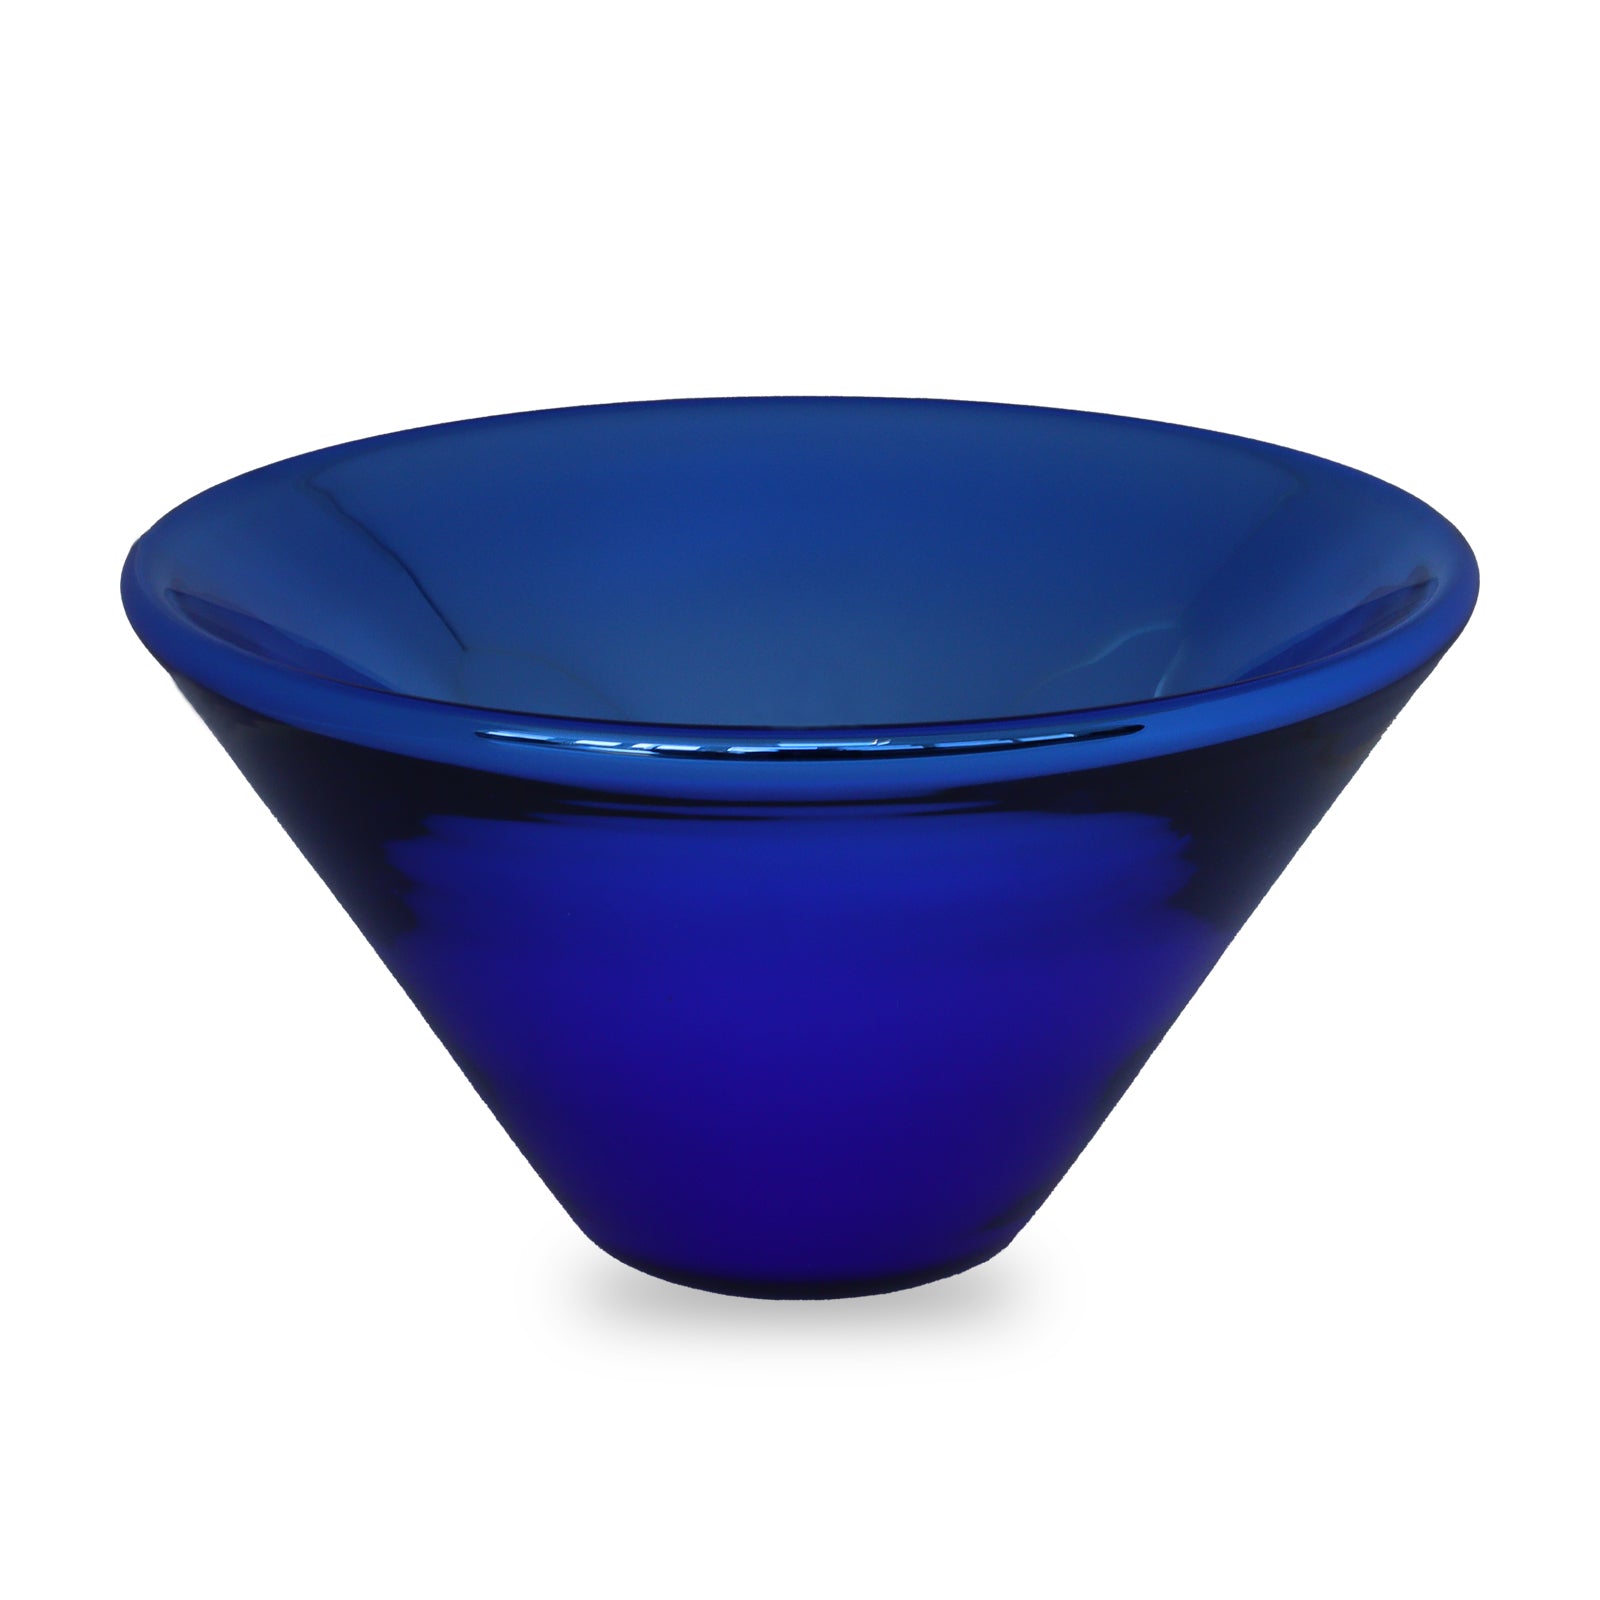 Nick Munro Silver Lining Bowl Blue Large